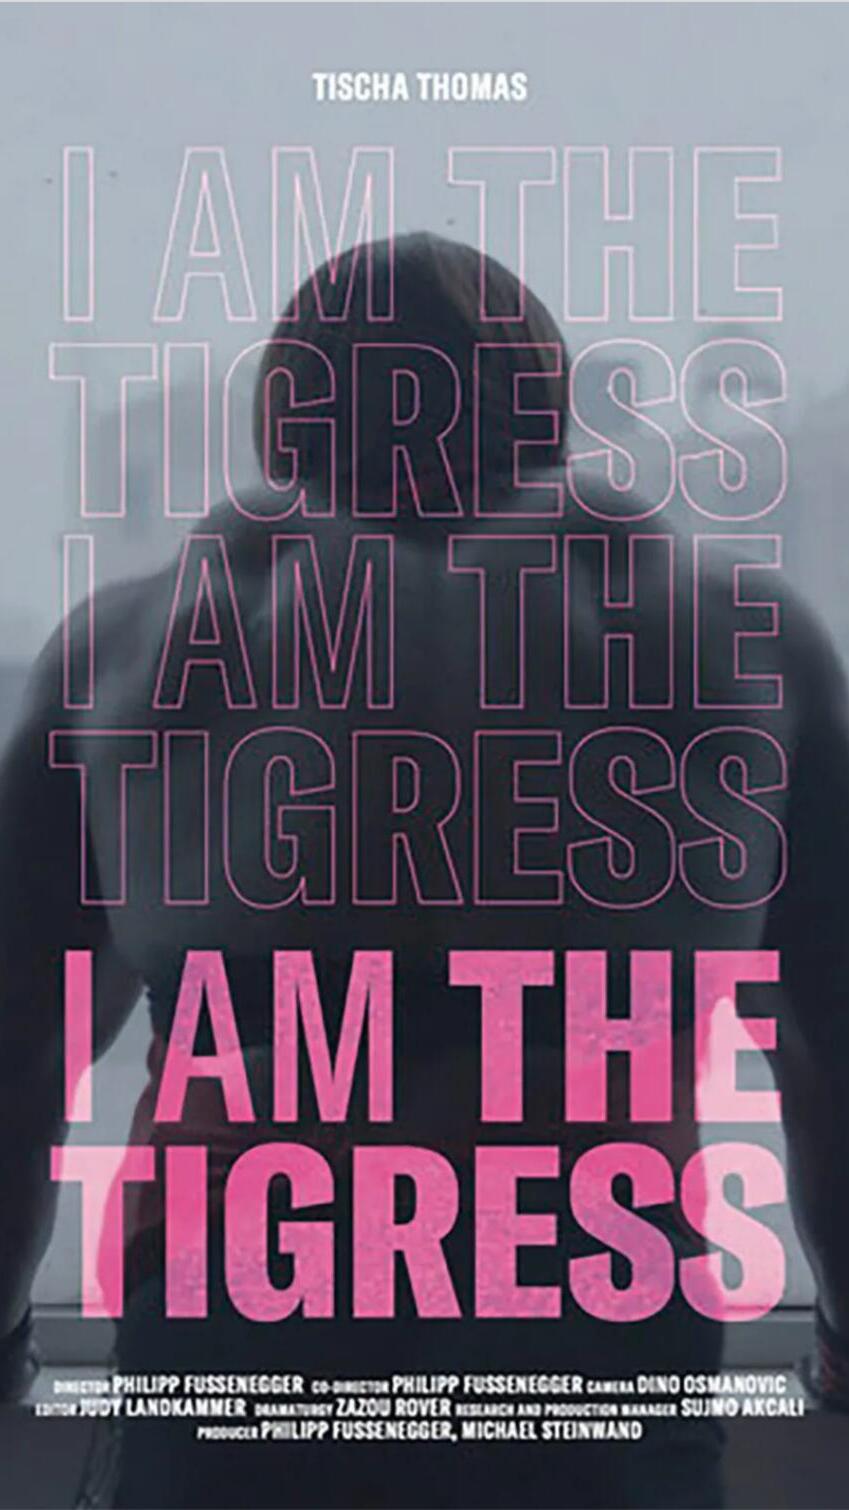 I AM THE TIGRESS